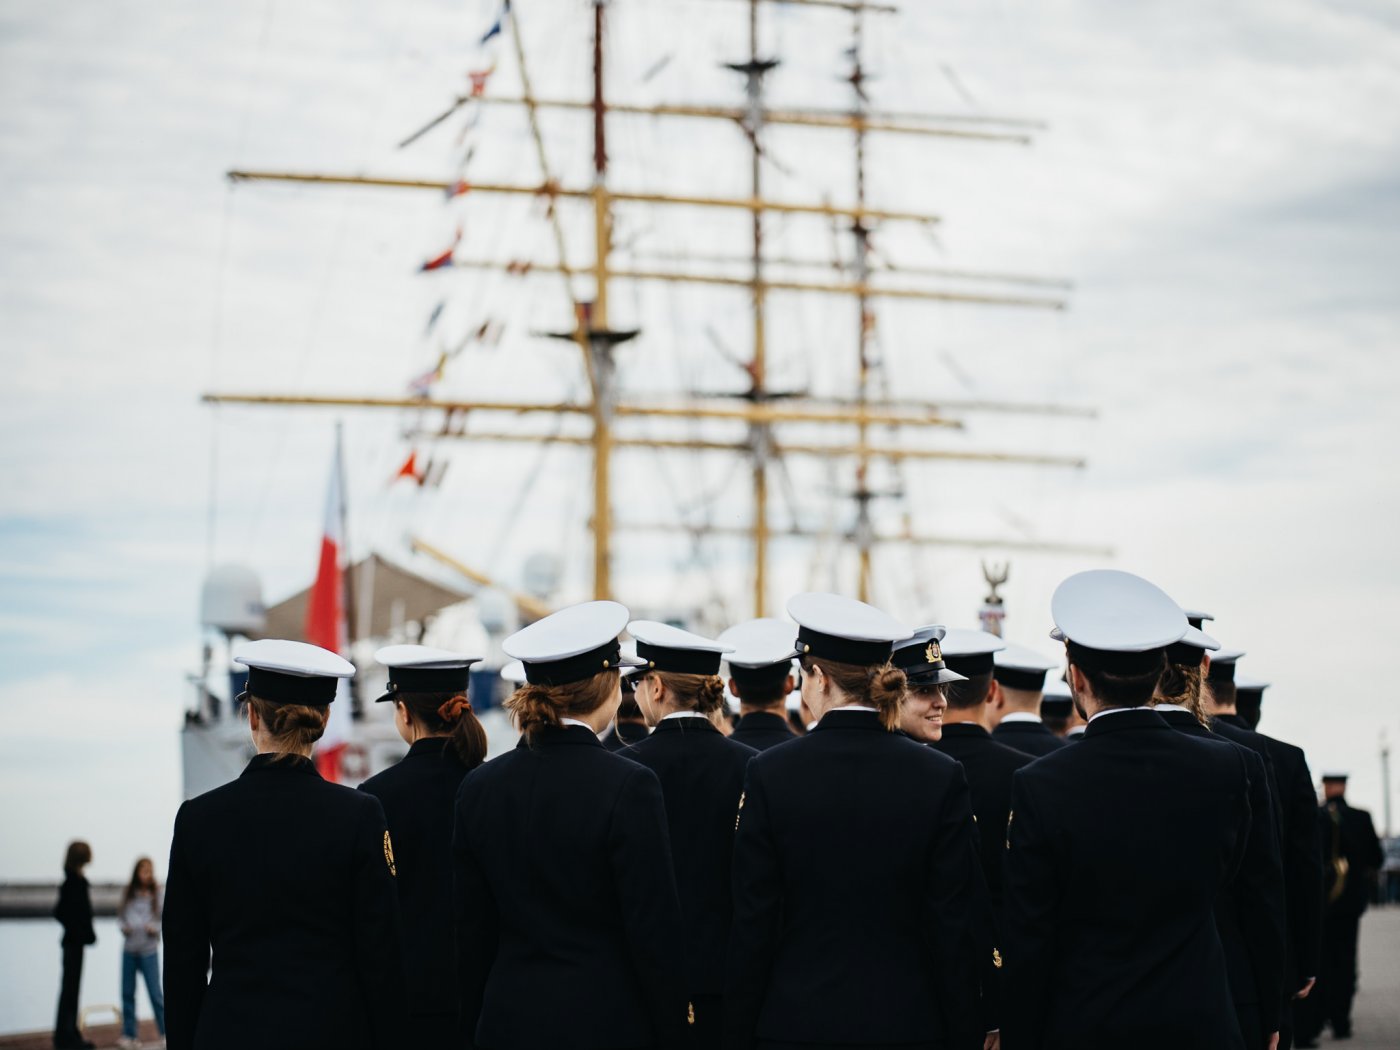 Nabrzeże Pomorskie w Gdyni. Stoi odwrócona plecami grupa studentów Uniwersytetu Morskiego w granatowych mundurach i białych czapkach marynarskich, za nimi widoczne żagle statku